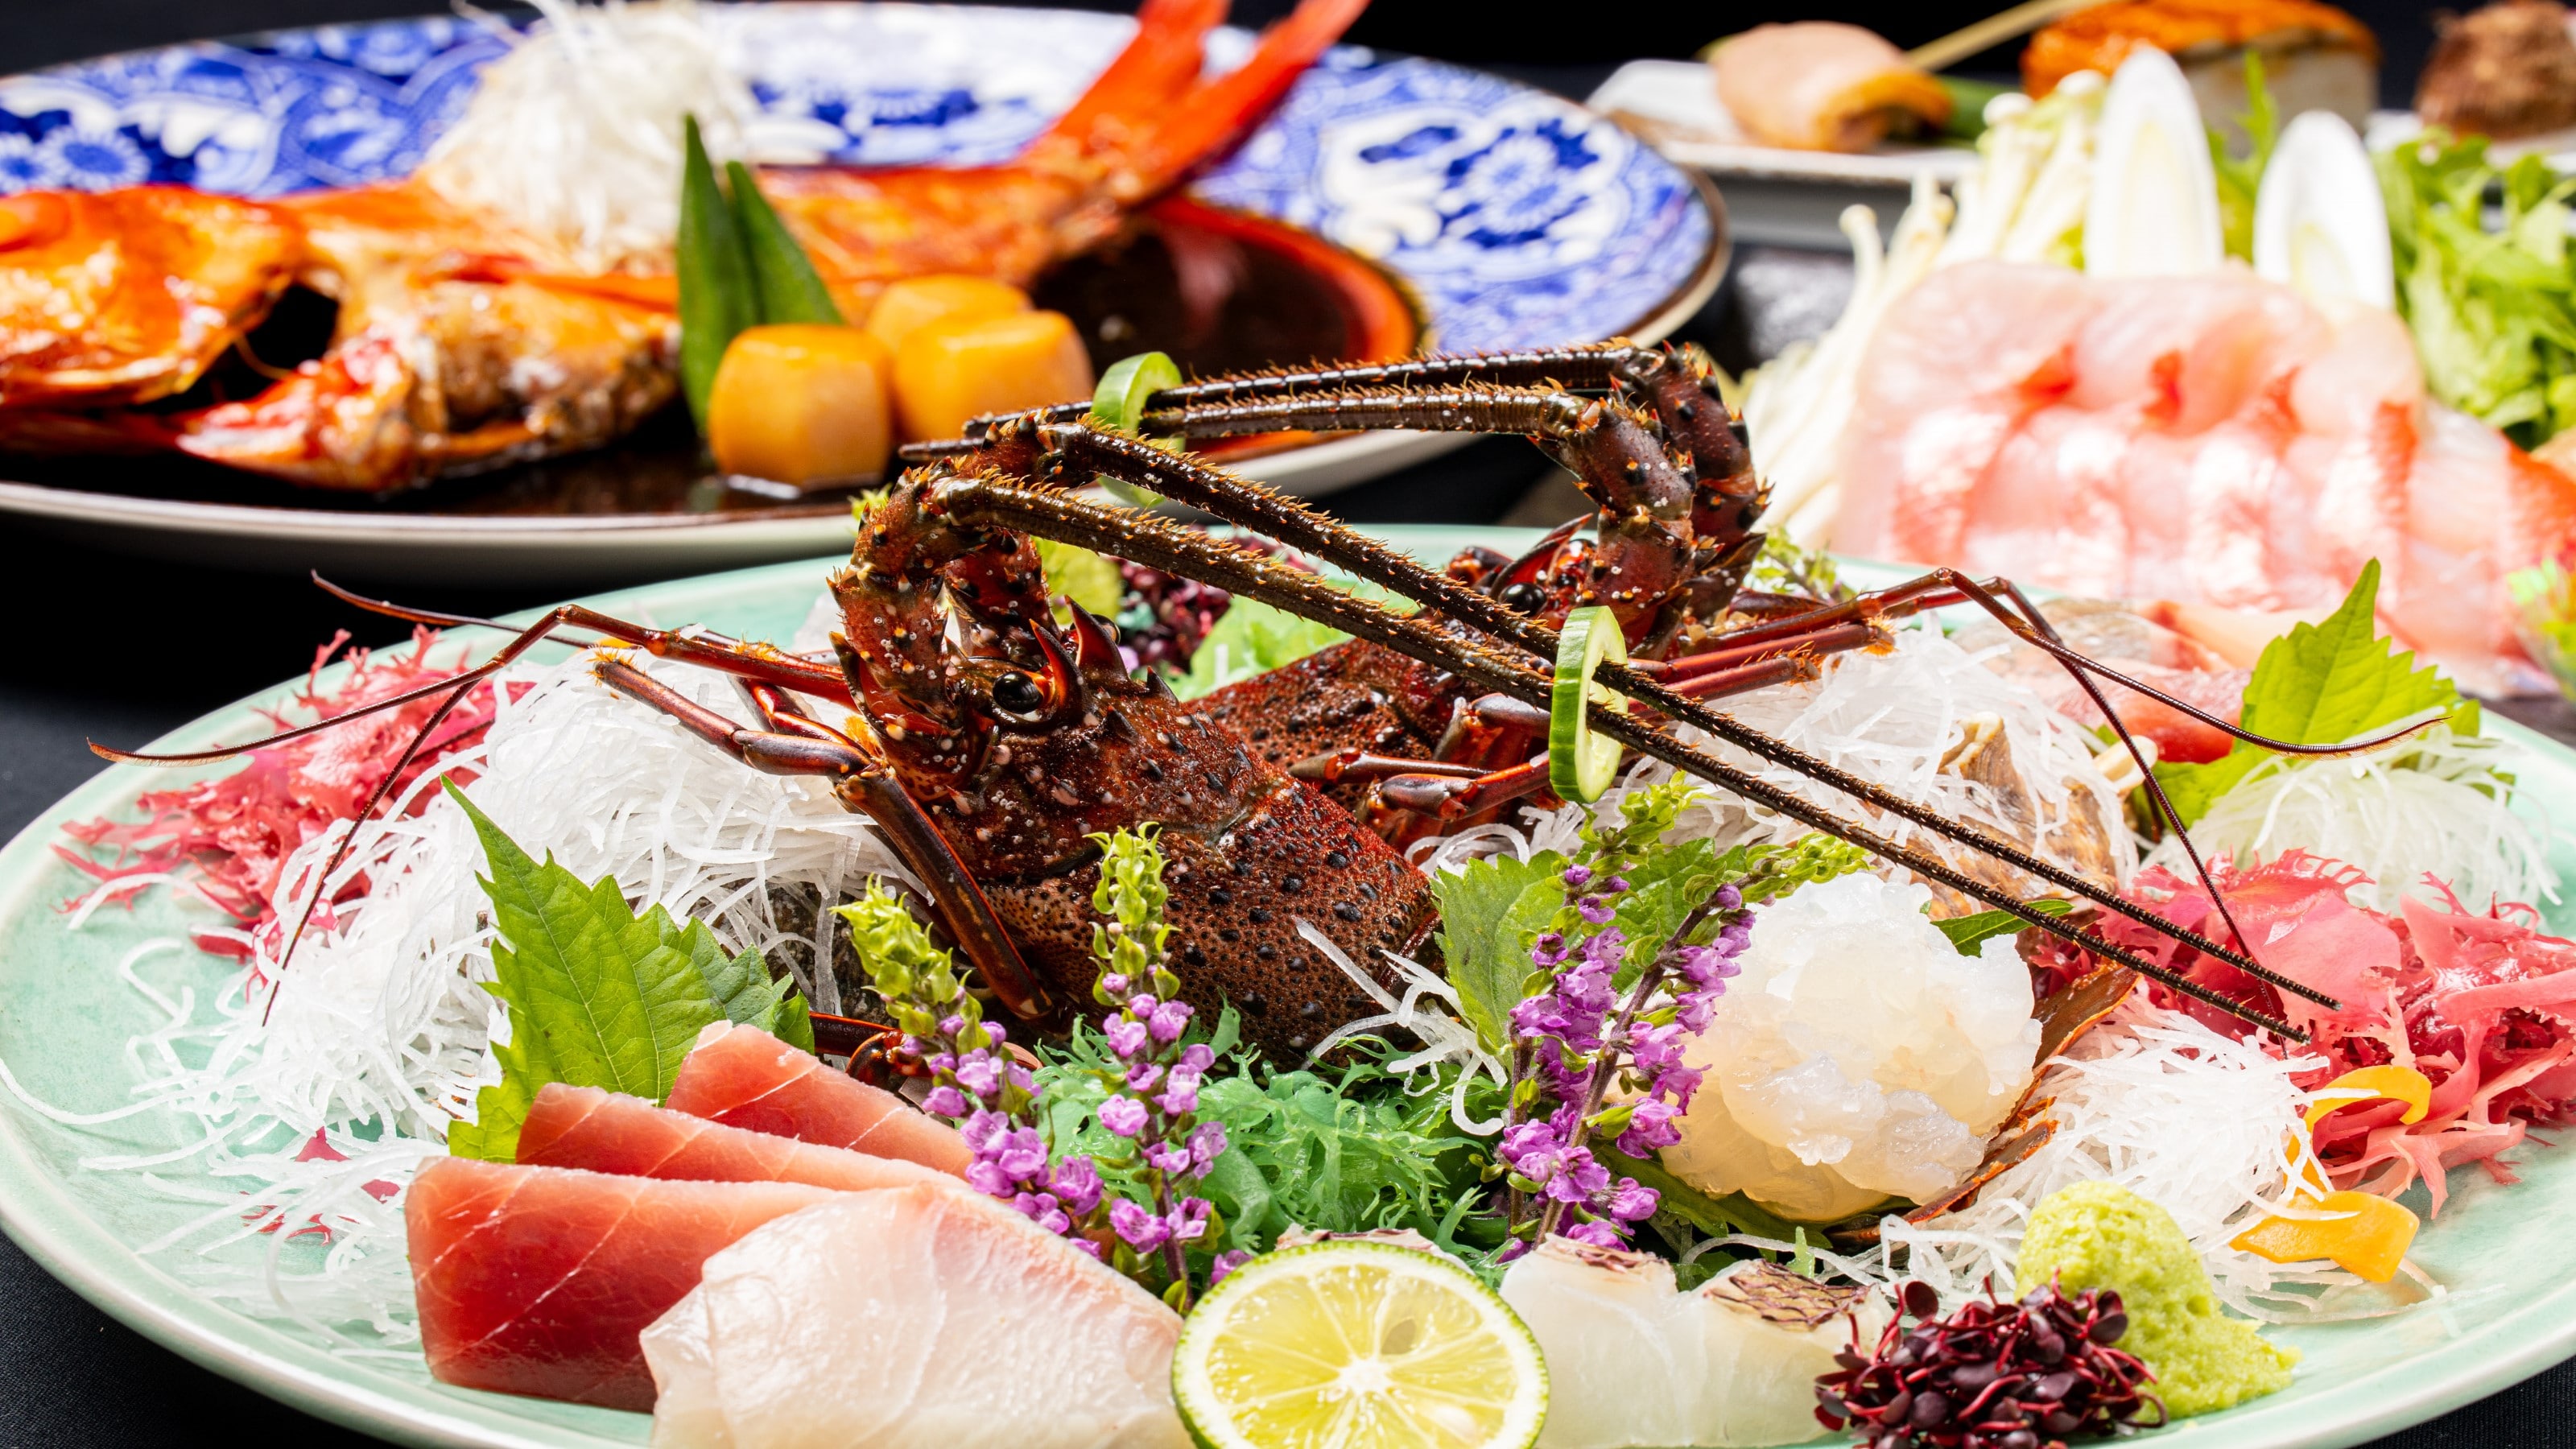 อิเสะกุ้งมังกรซาซิมิ "อาหารในห้อง" ที่ดีที่สุดของโยชิที่แนะนำโดยหัวหน้าคณะกรรมการ